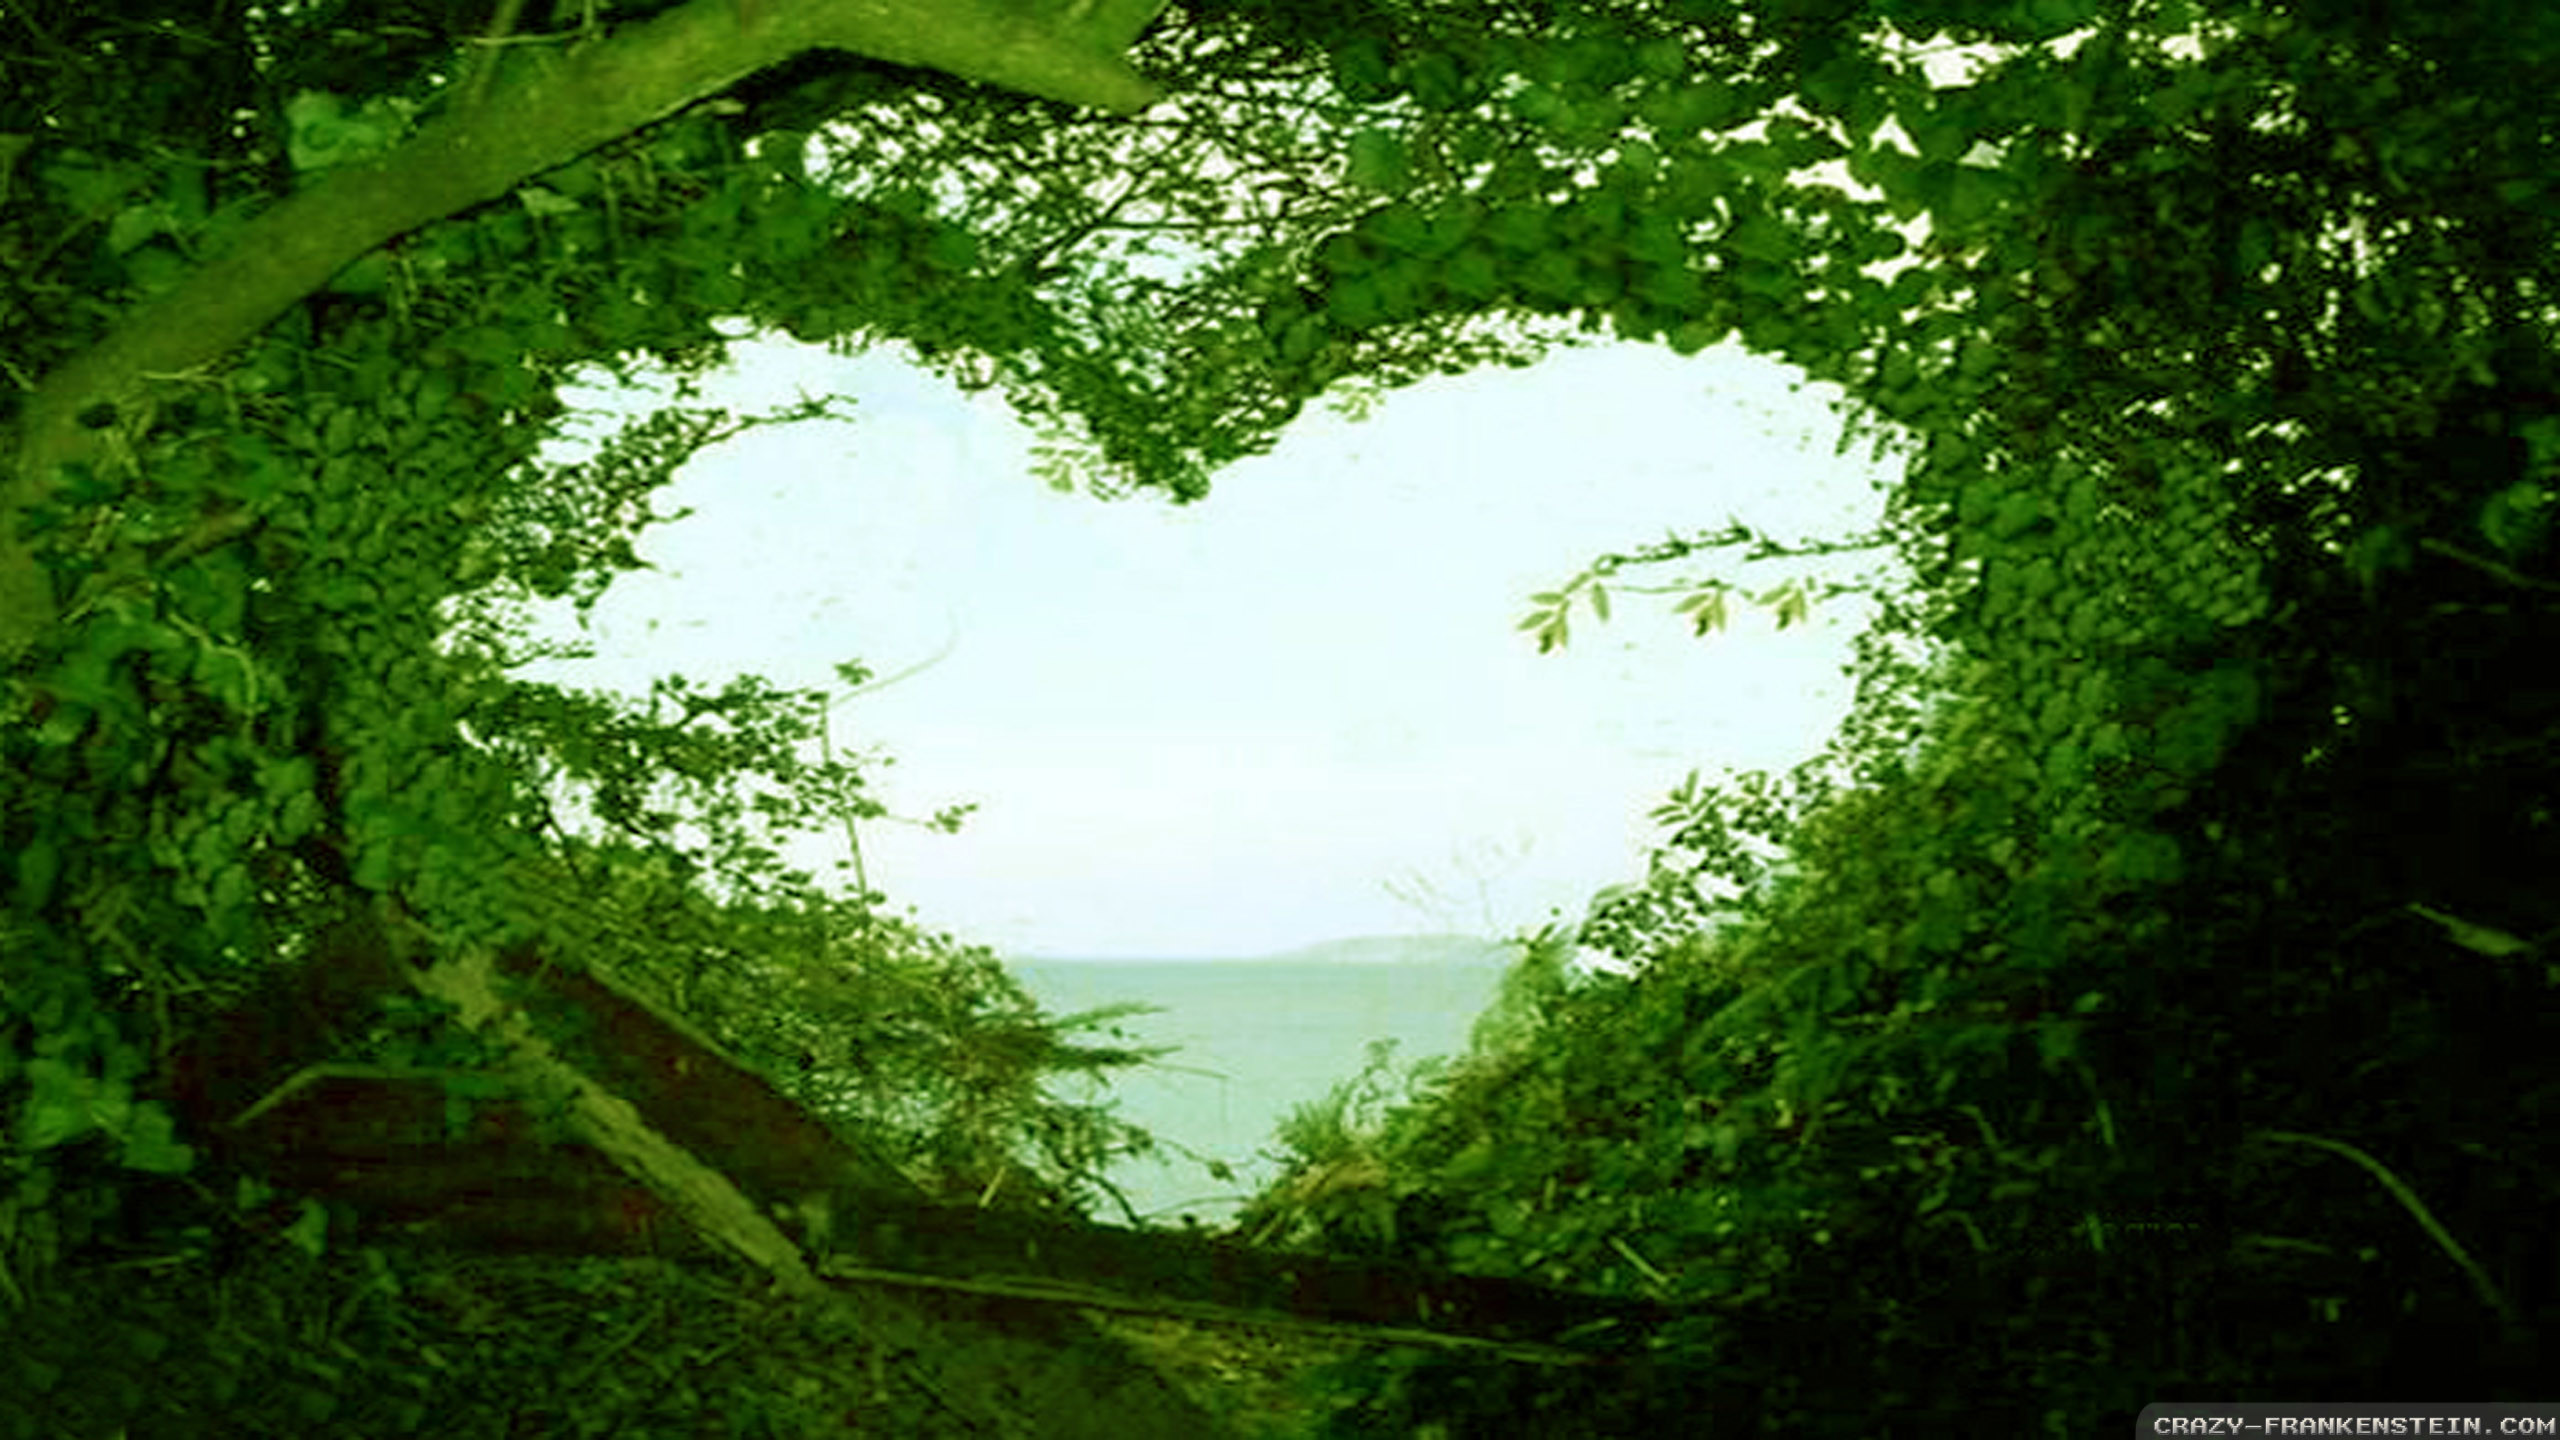 2560x1440 beautiful love wallpapers for mobile beautiful-love-nature-wallpaper -hd-desktop